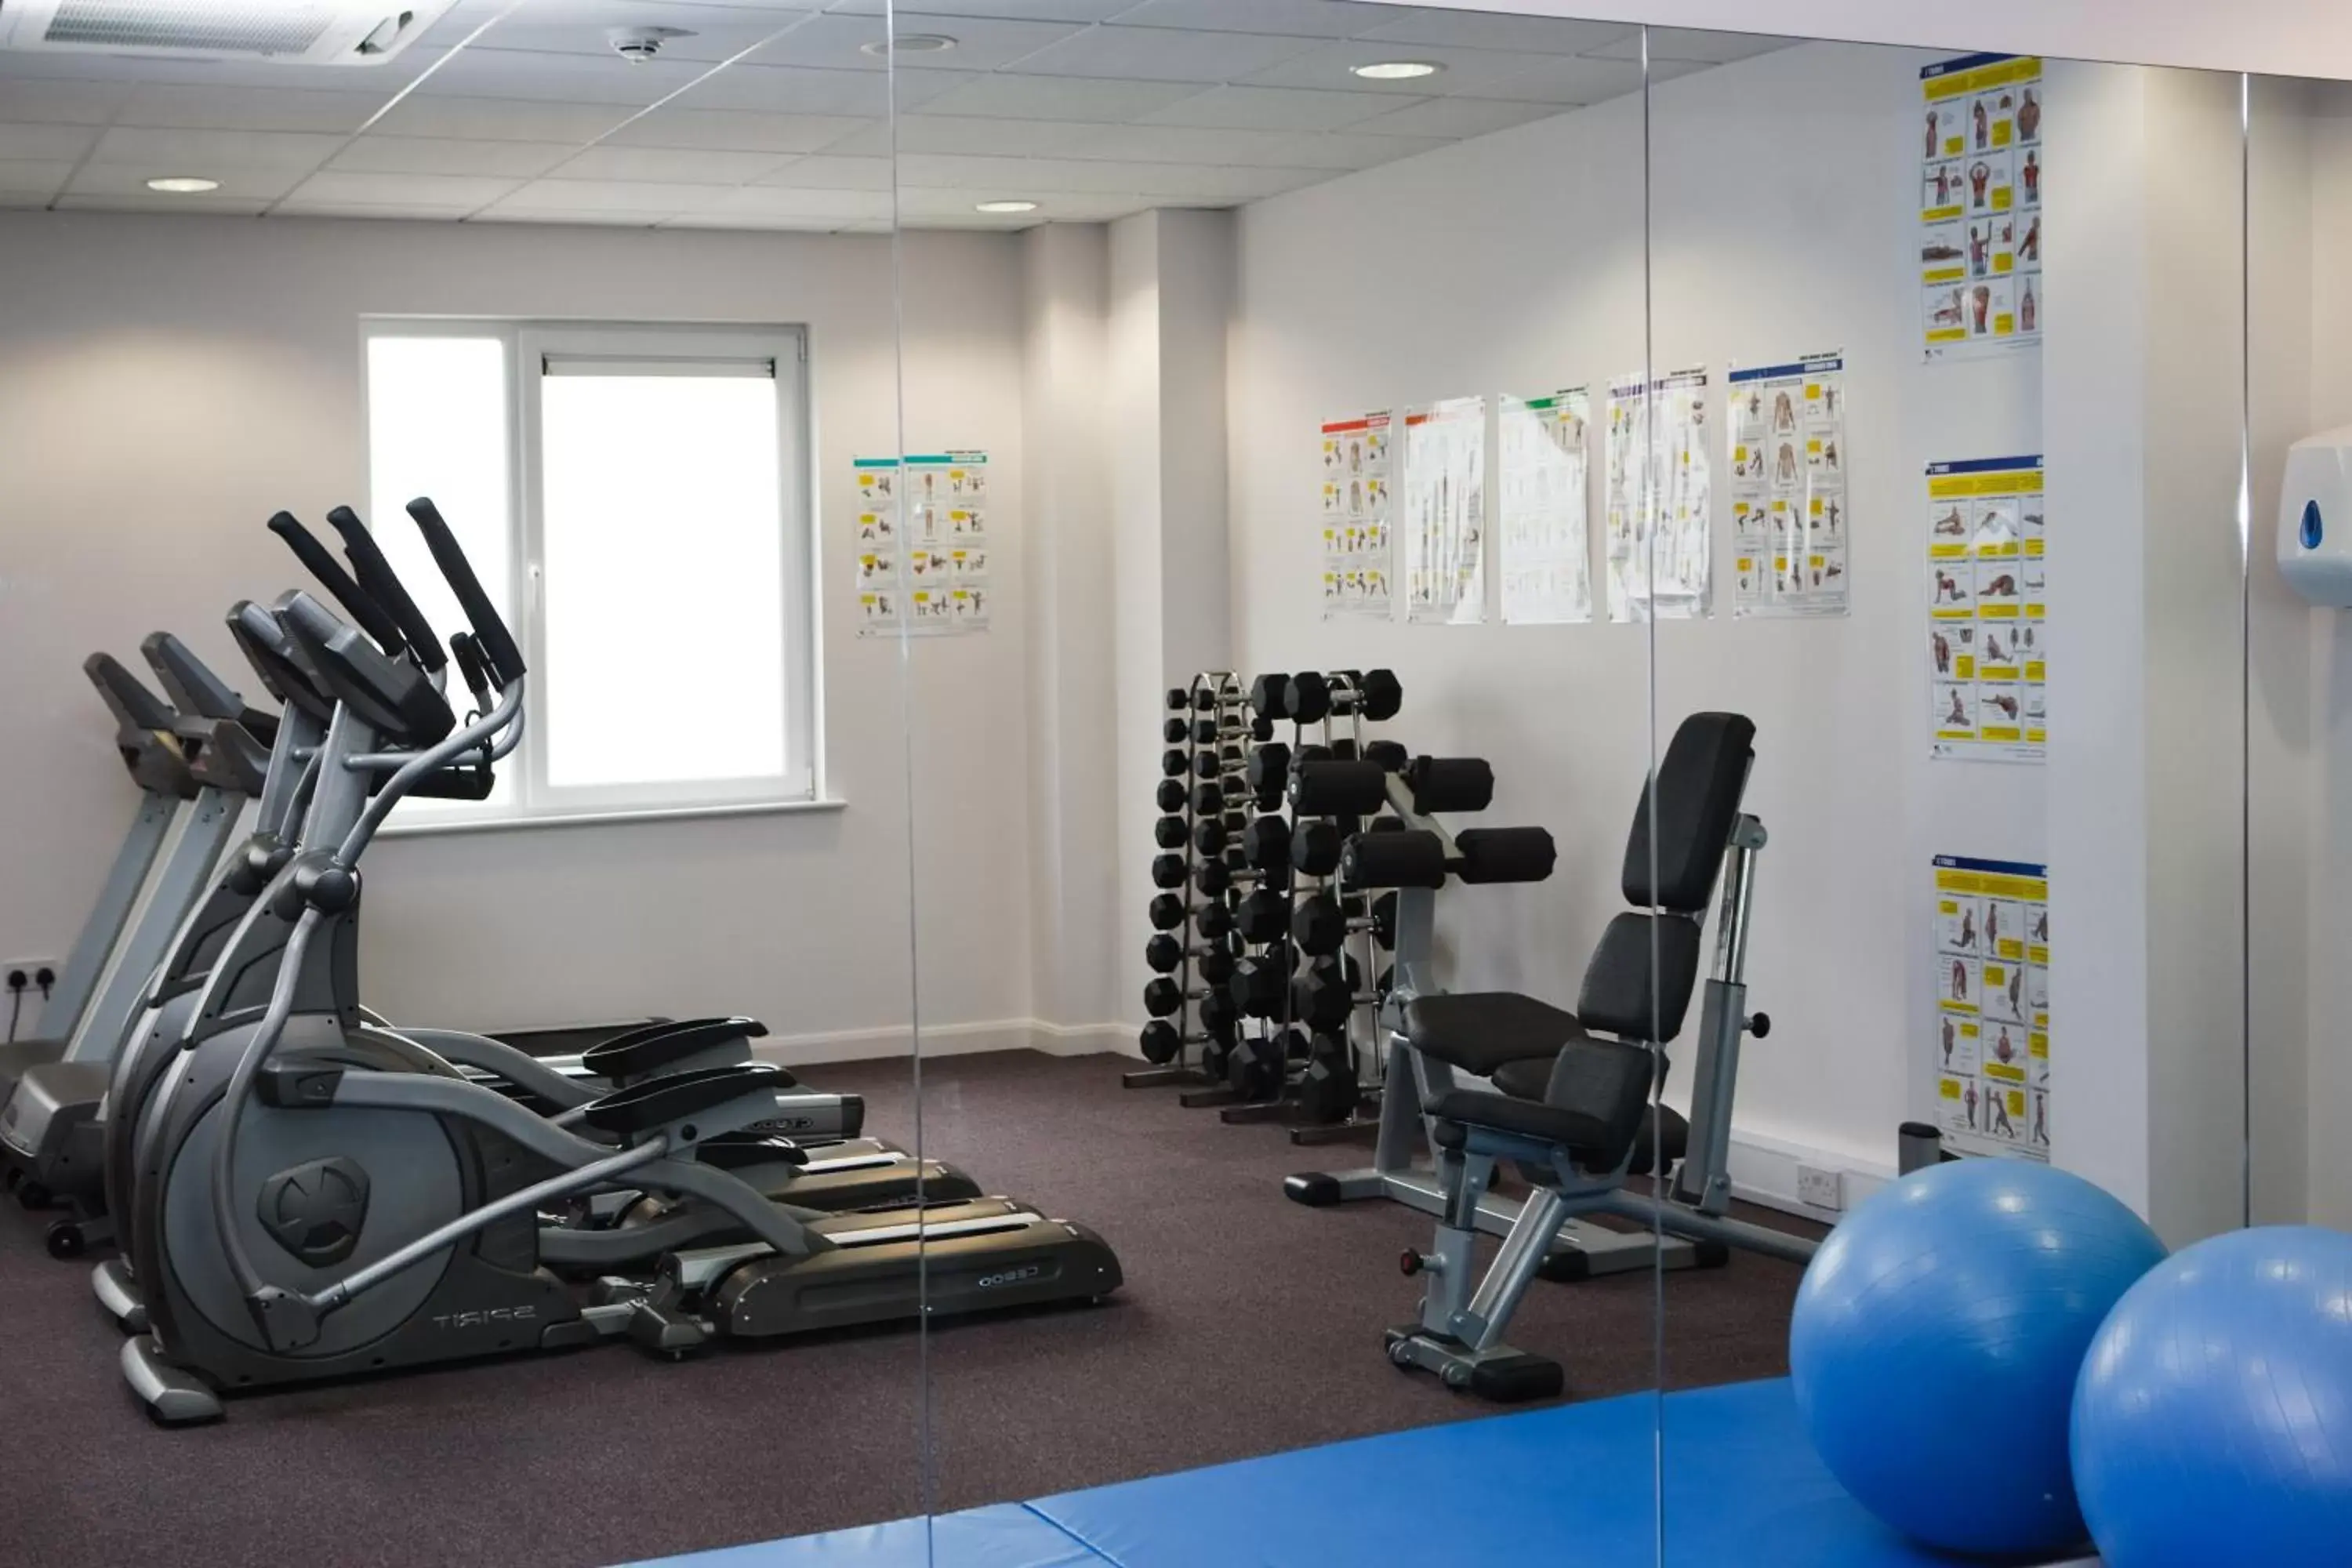 Fitness centre/facilities, Fitness Center/Facilities in Leonardo Hotel Bradford - formerly Jurys Inn